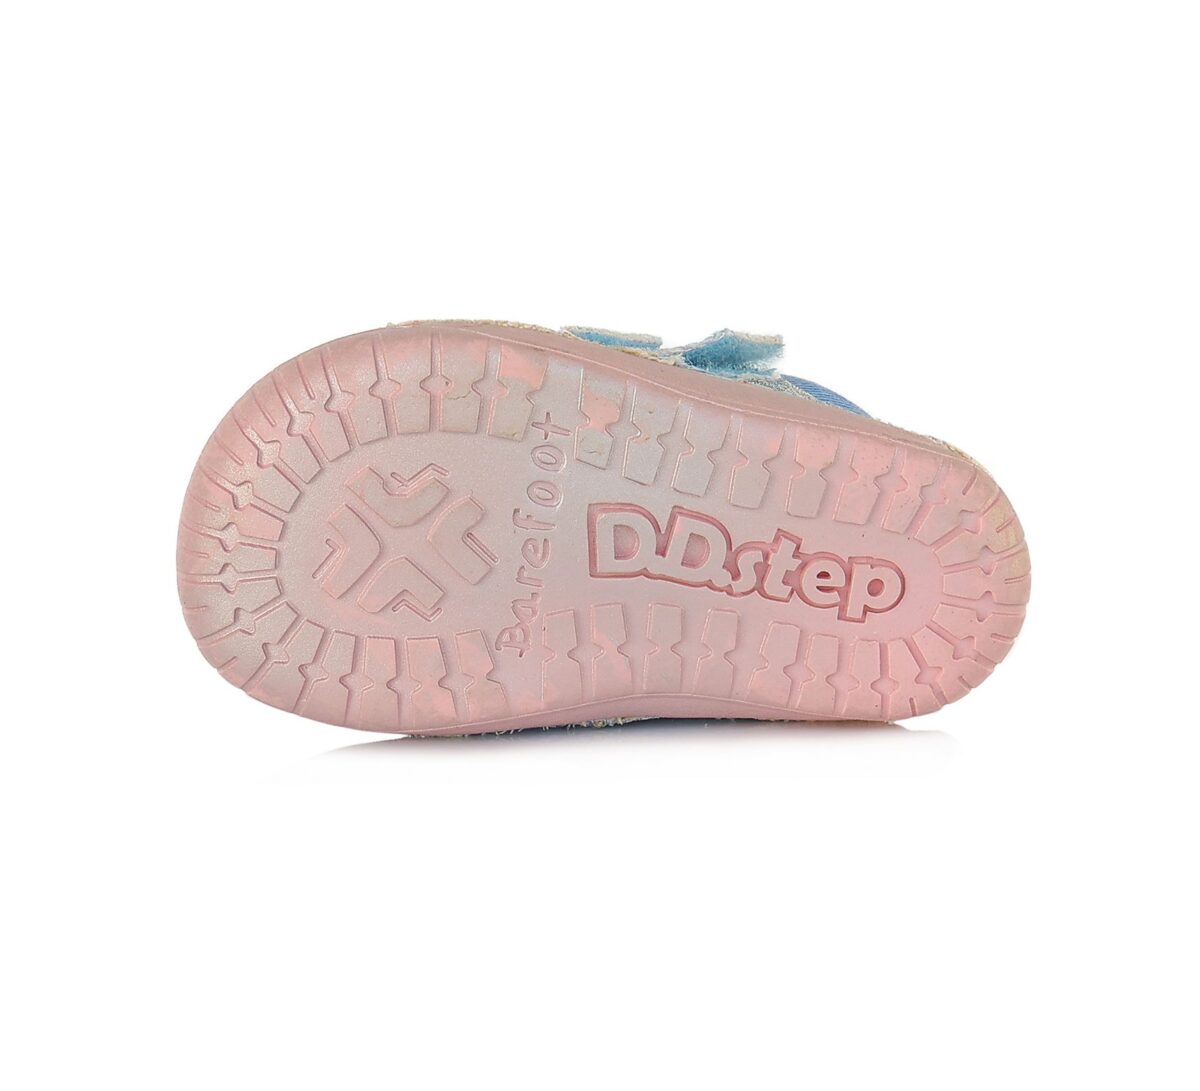 D.D.Step tekstiilist barefoot saapad, Sky Blue 070 D.D.Step - HellyK - Kvaliteetsed lasteriided, villariided, barefoot jalatsid